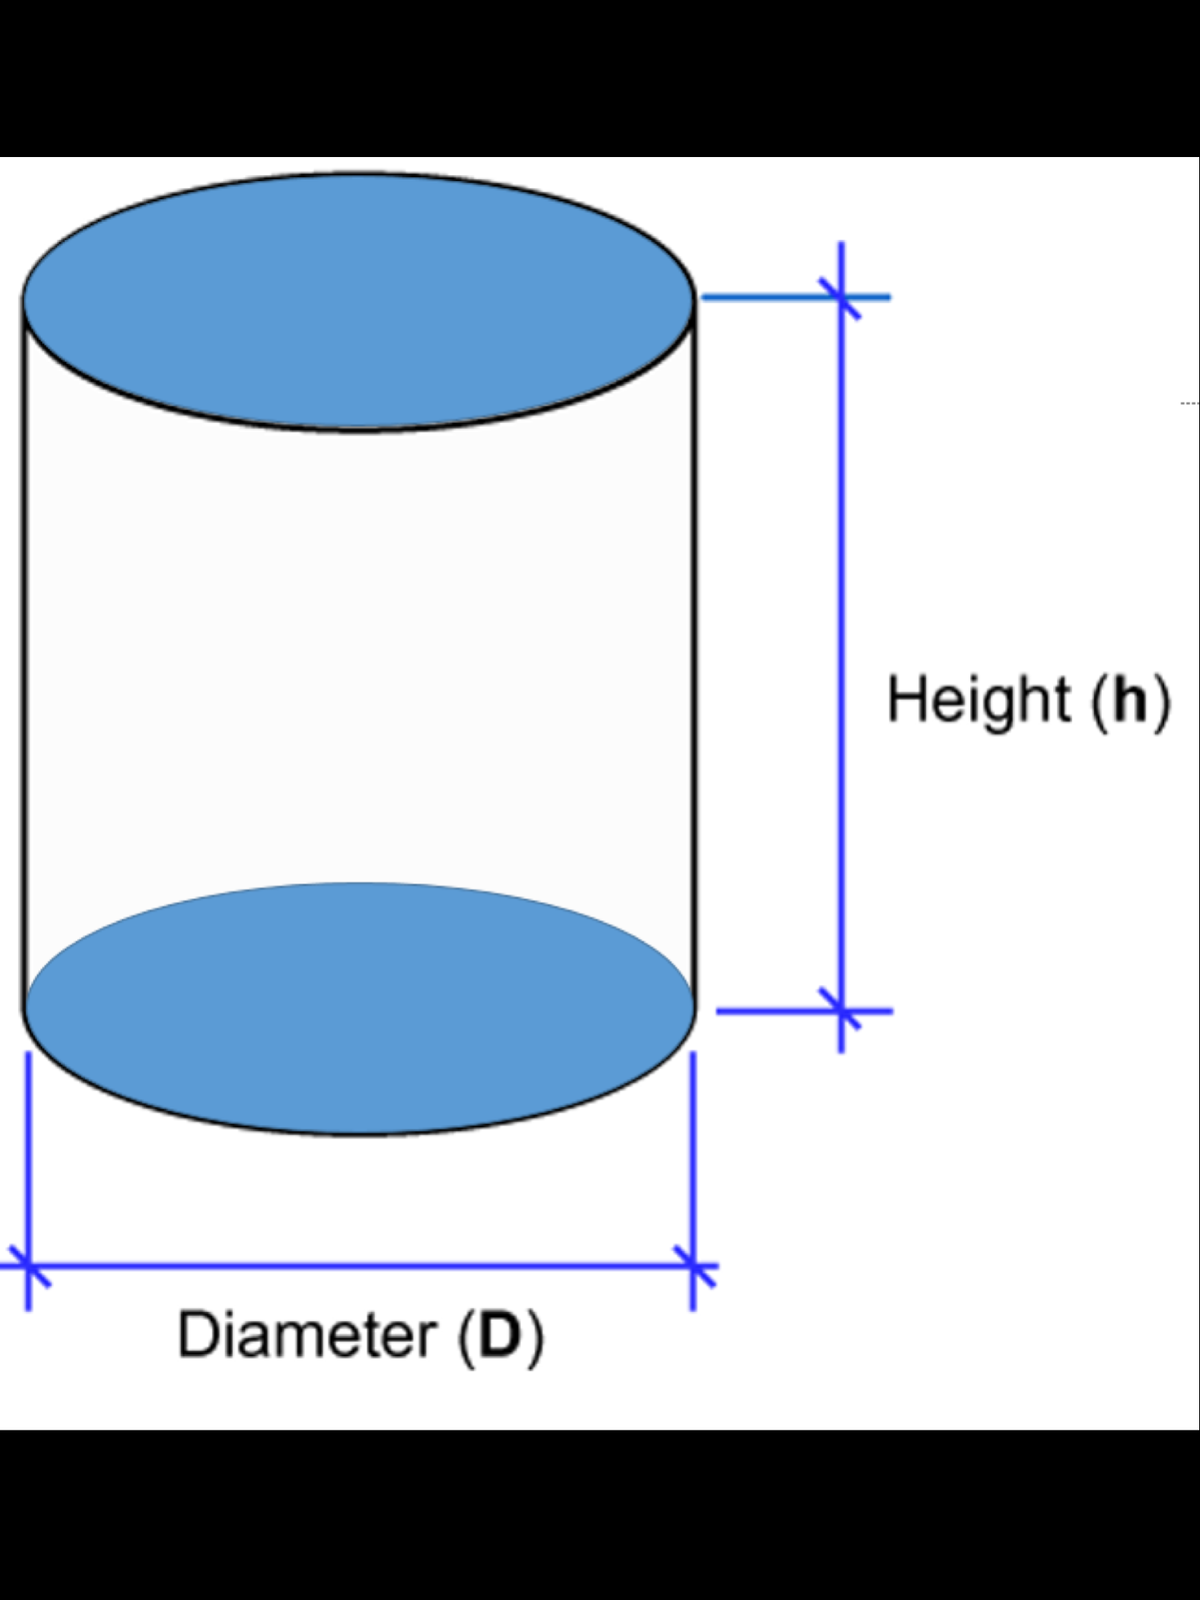 Height (h)
Diameter (D)
